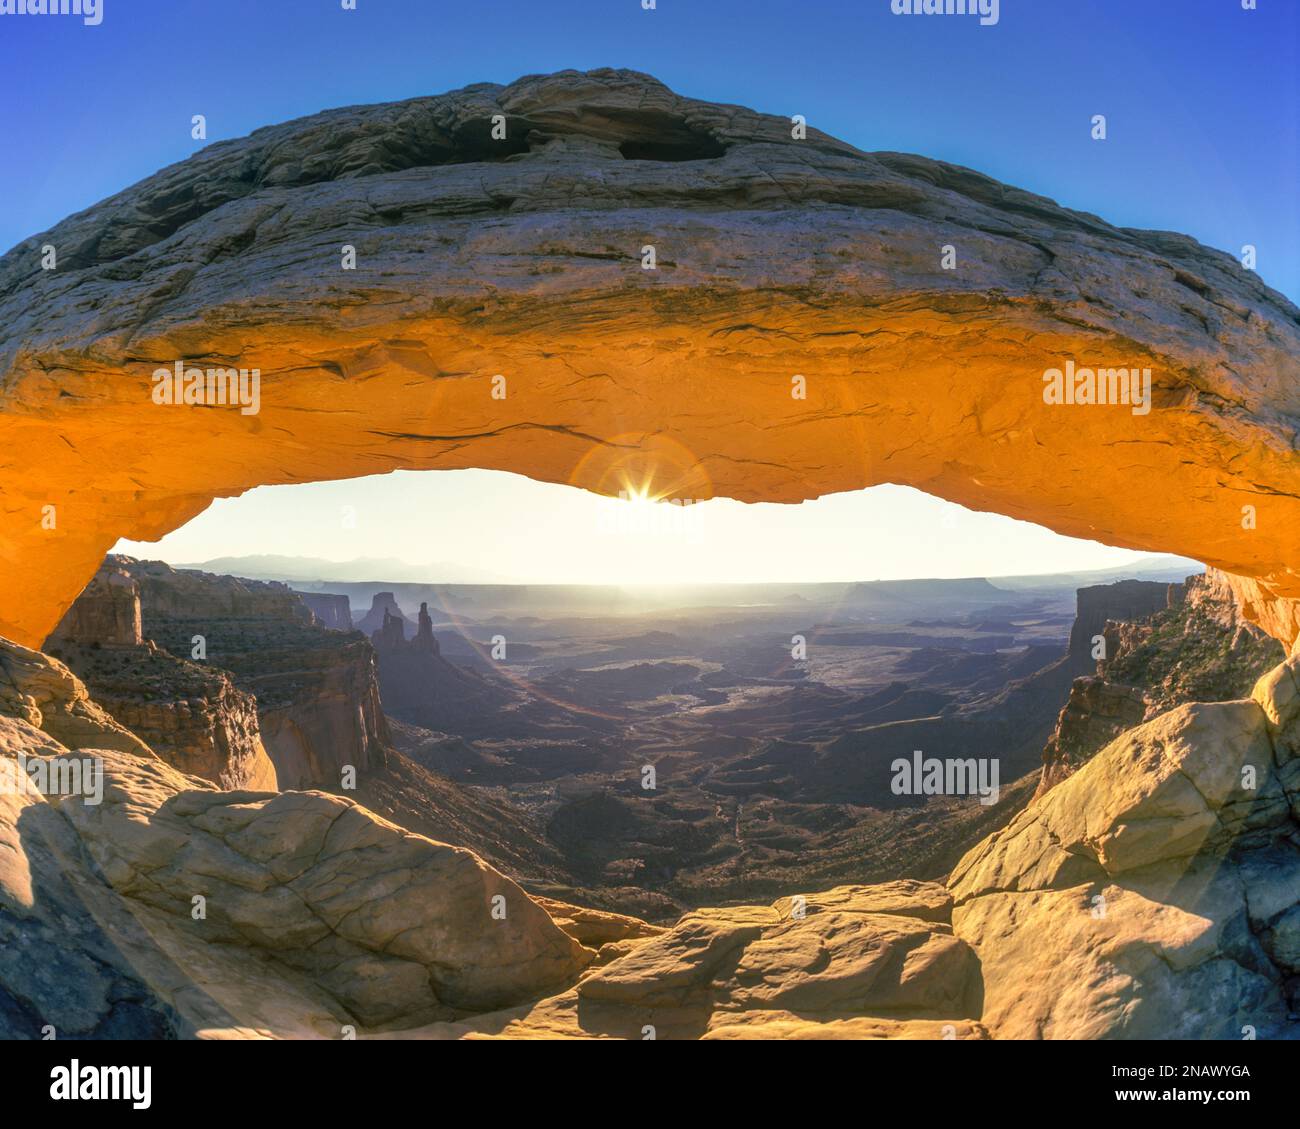 L'ÎLE DE MESA ARCH DANS LE CIEL Canyonlands National Park Utah USA Banque D'Images